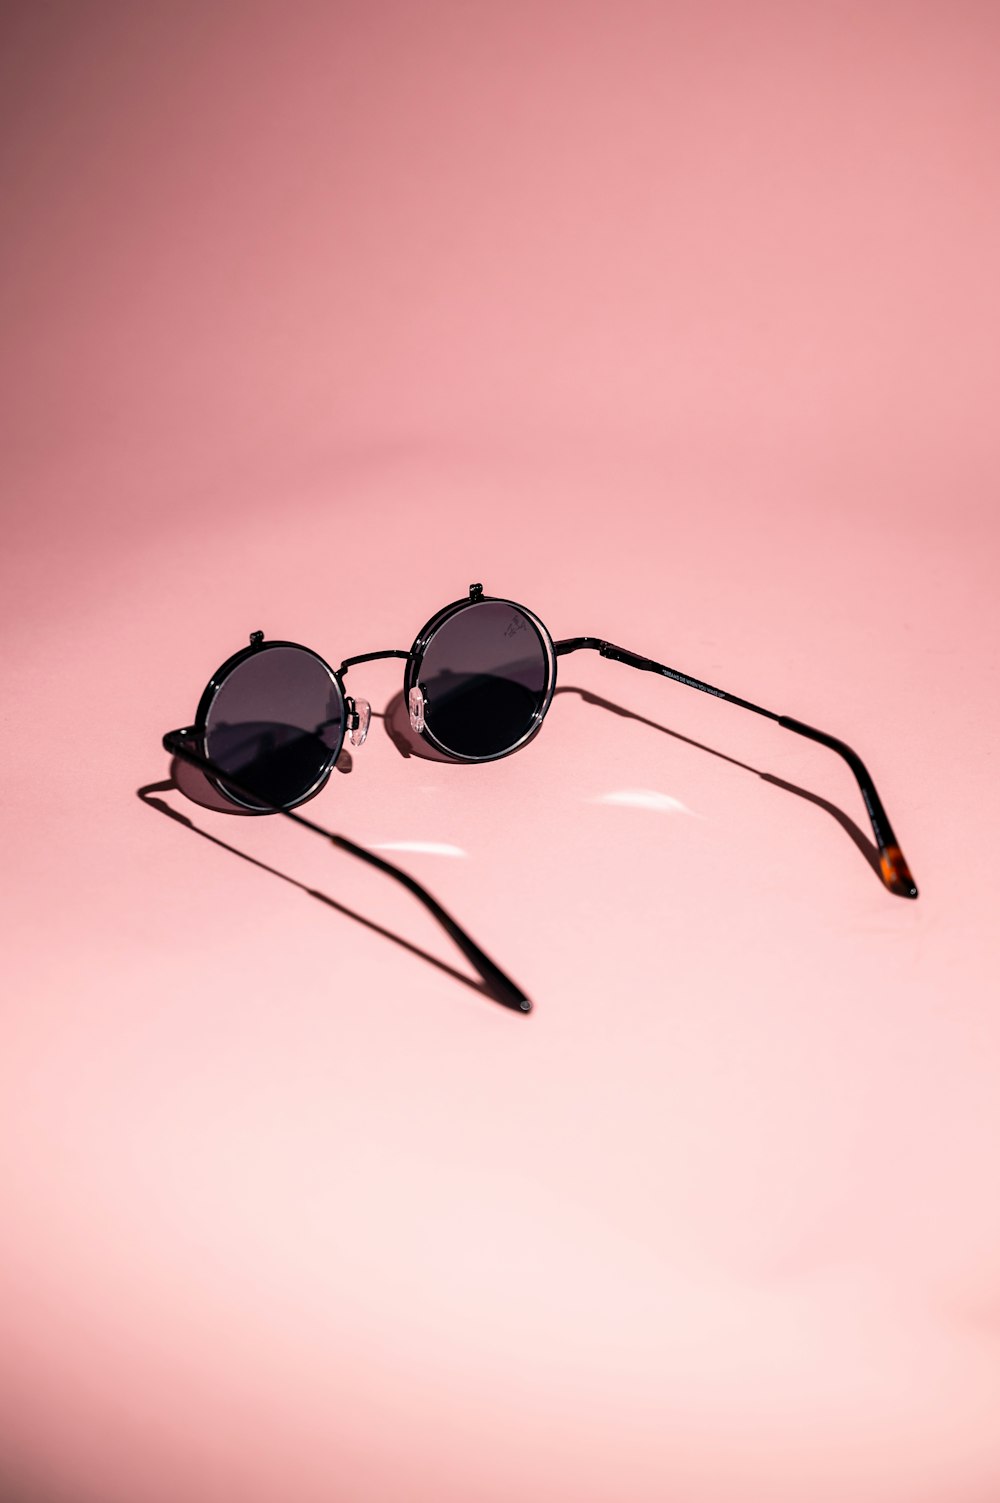 occhiali da sole con montatura nera su superficie bianca